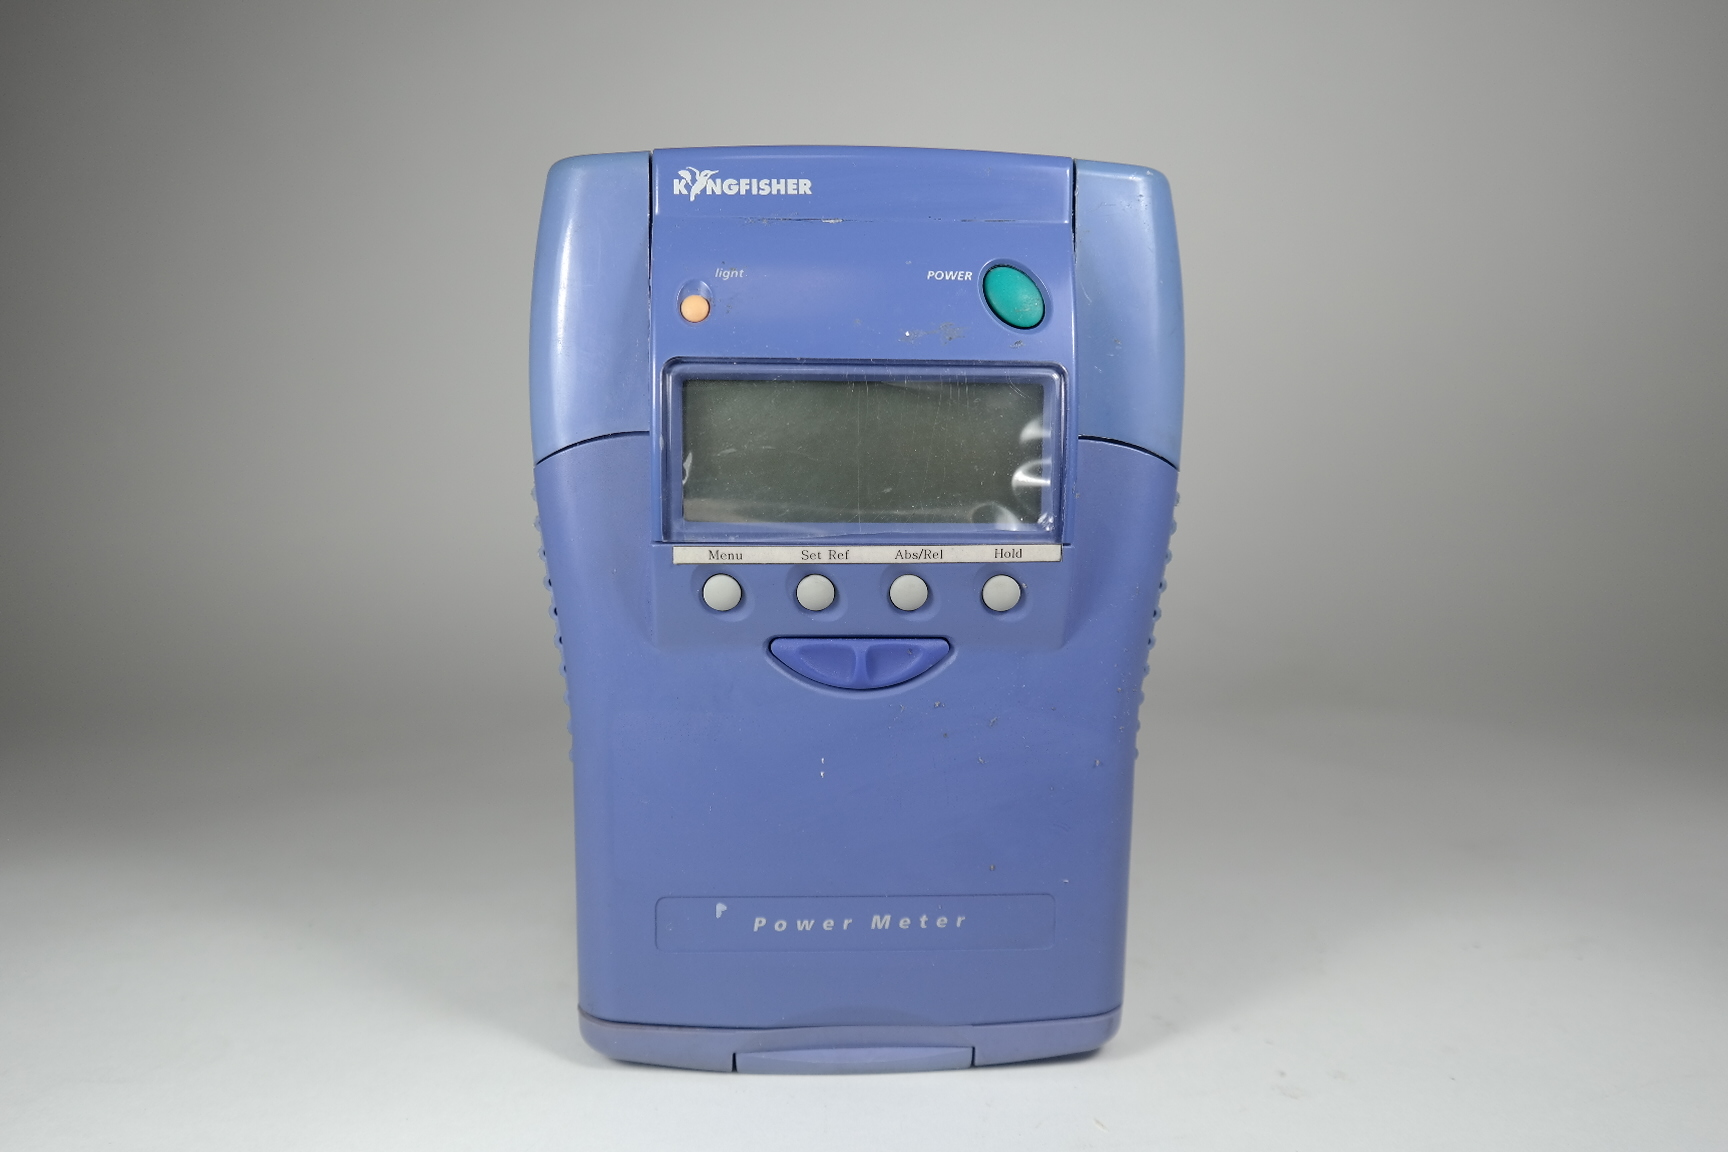 Kingfisher/Optical Power Meter/KI7600